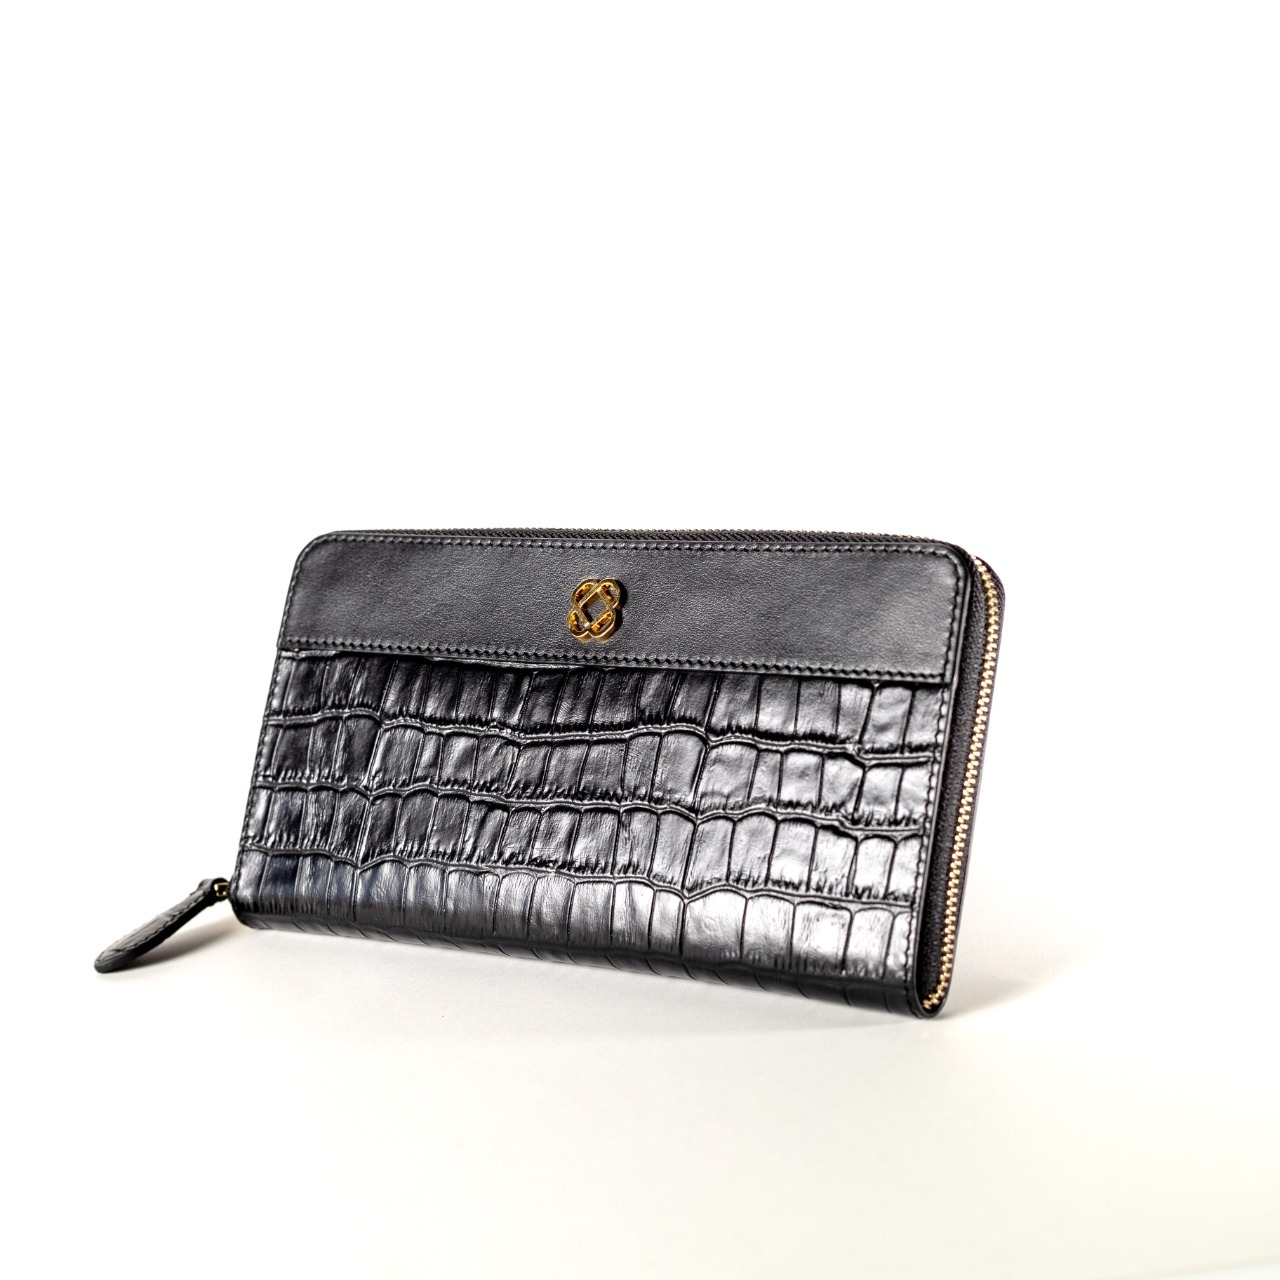 Buy OBH Ladies Long Wallet with Zipper Black Croc Color Online in UAE ...